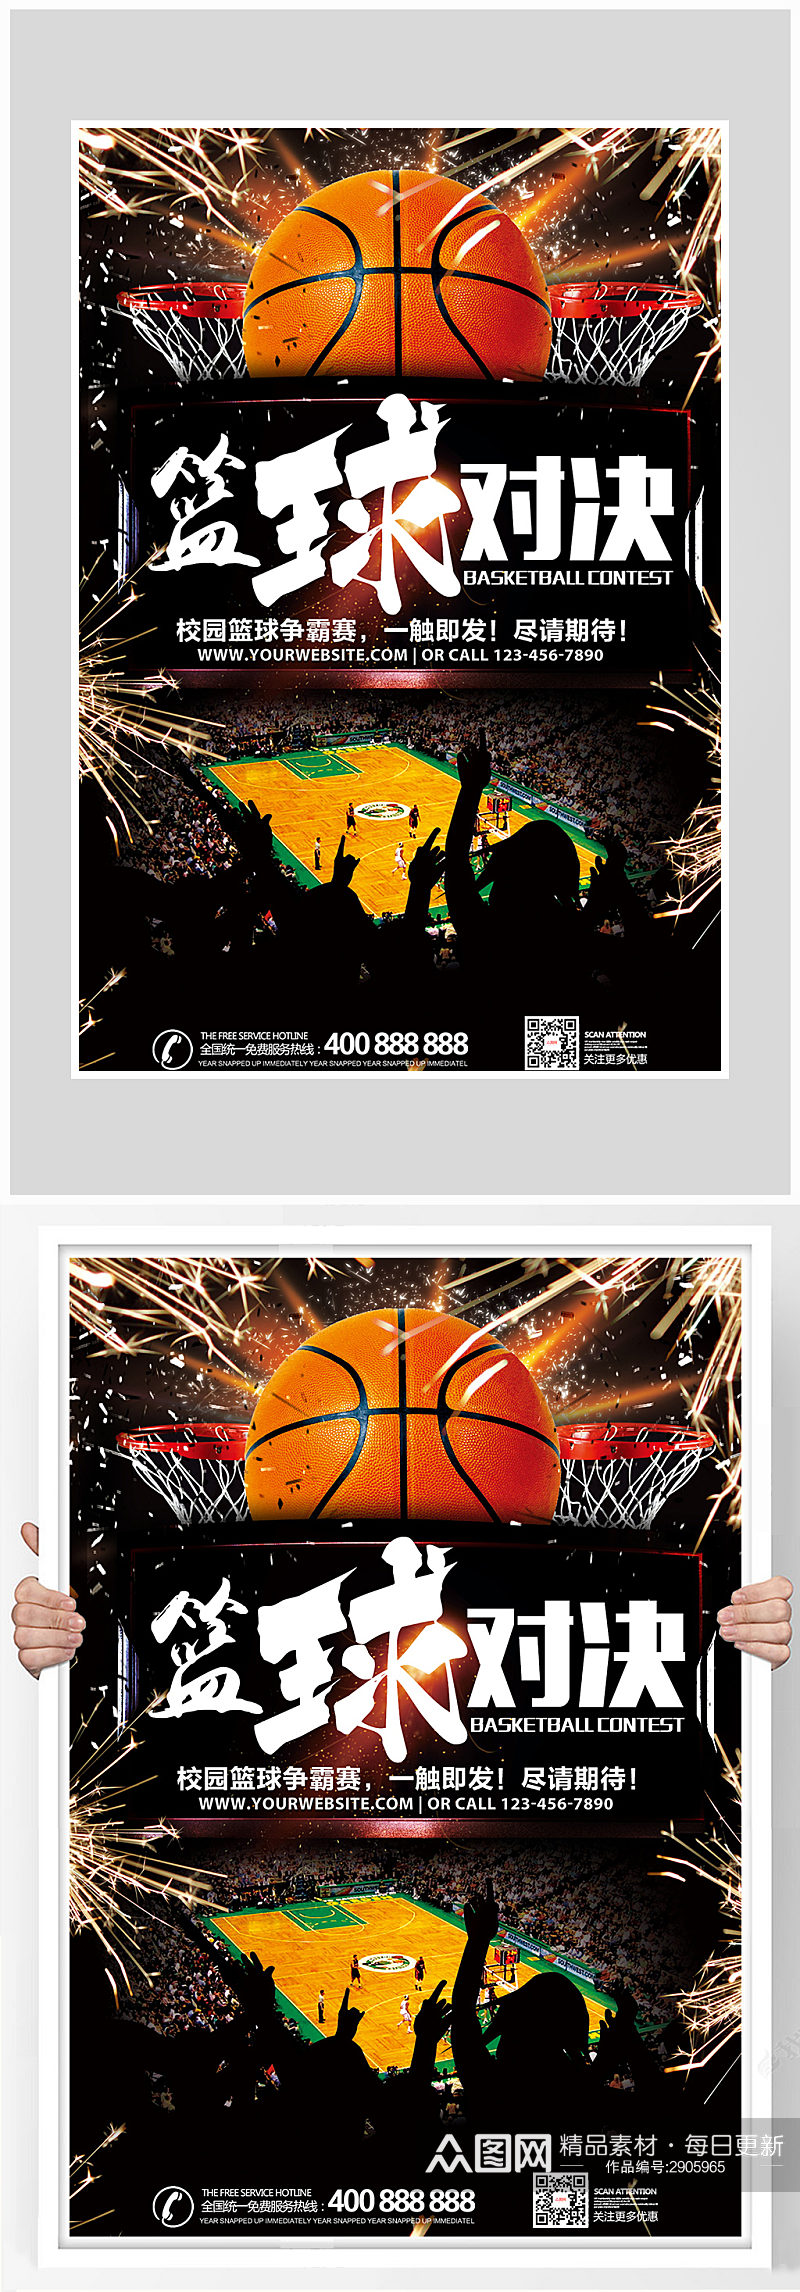 创意炫酷篮球对决海报设计素材